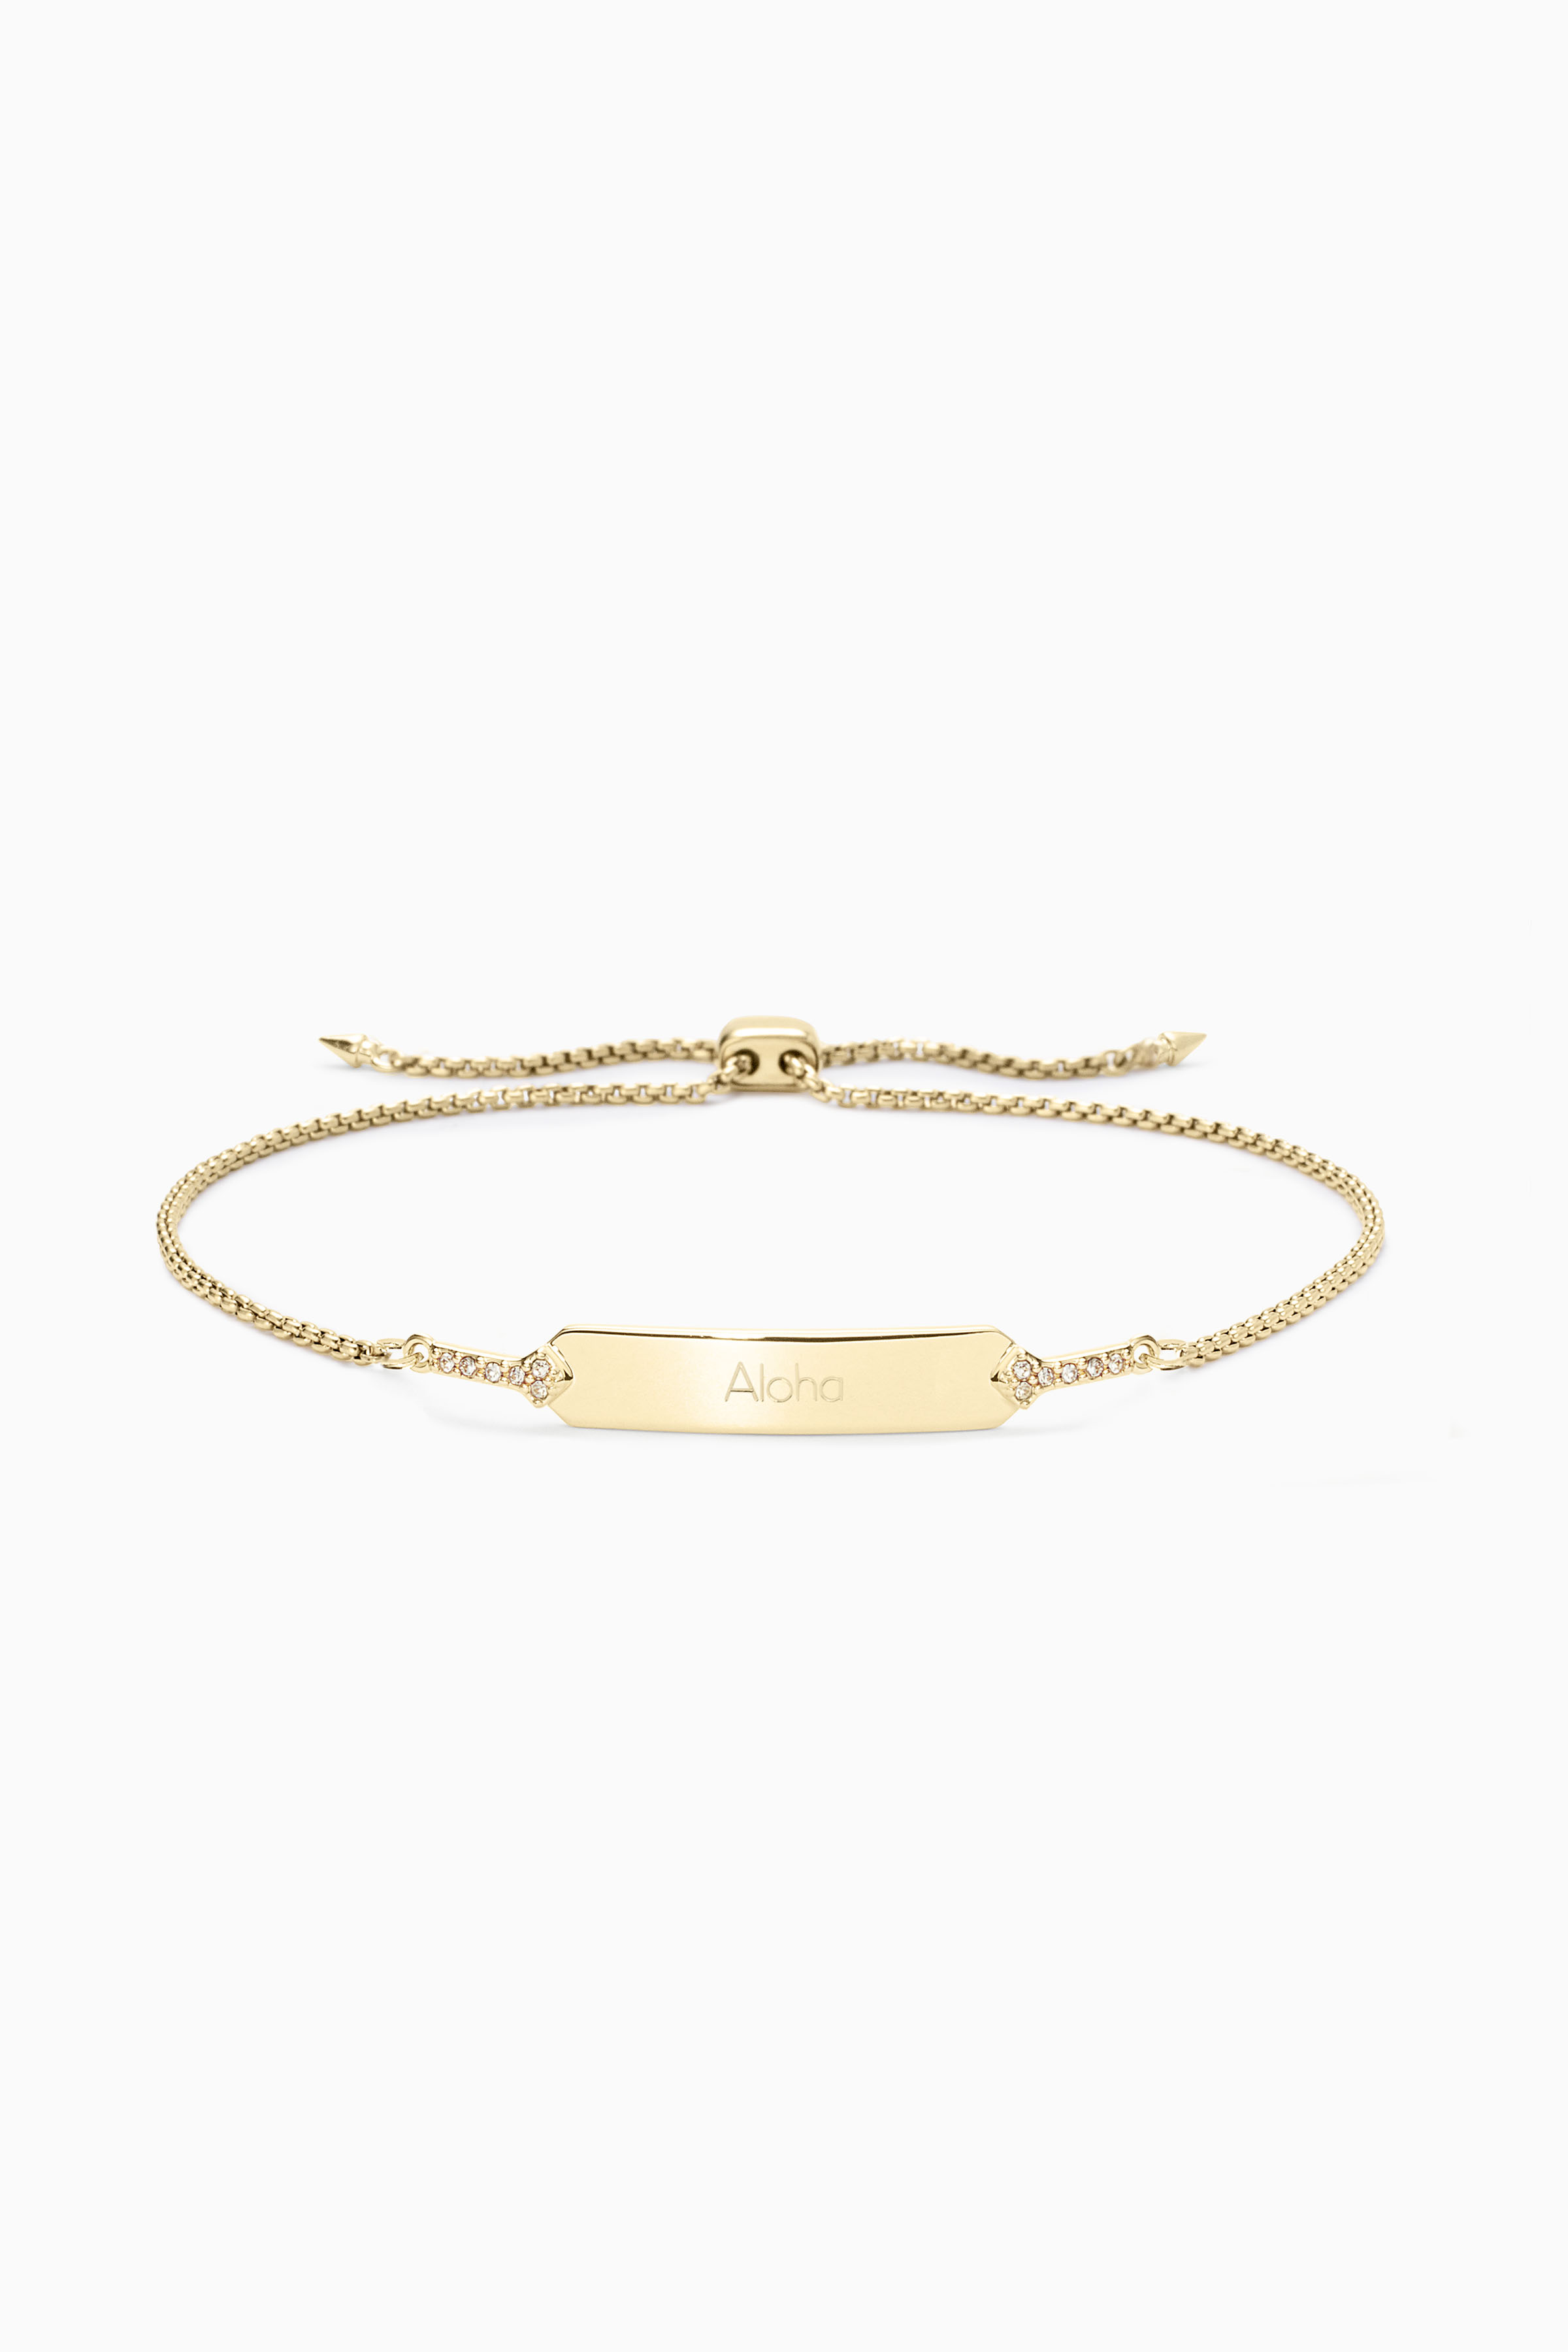 Stella & Dot gift guide - engravable wishing bracelet